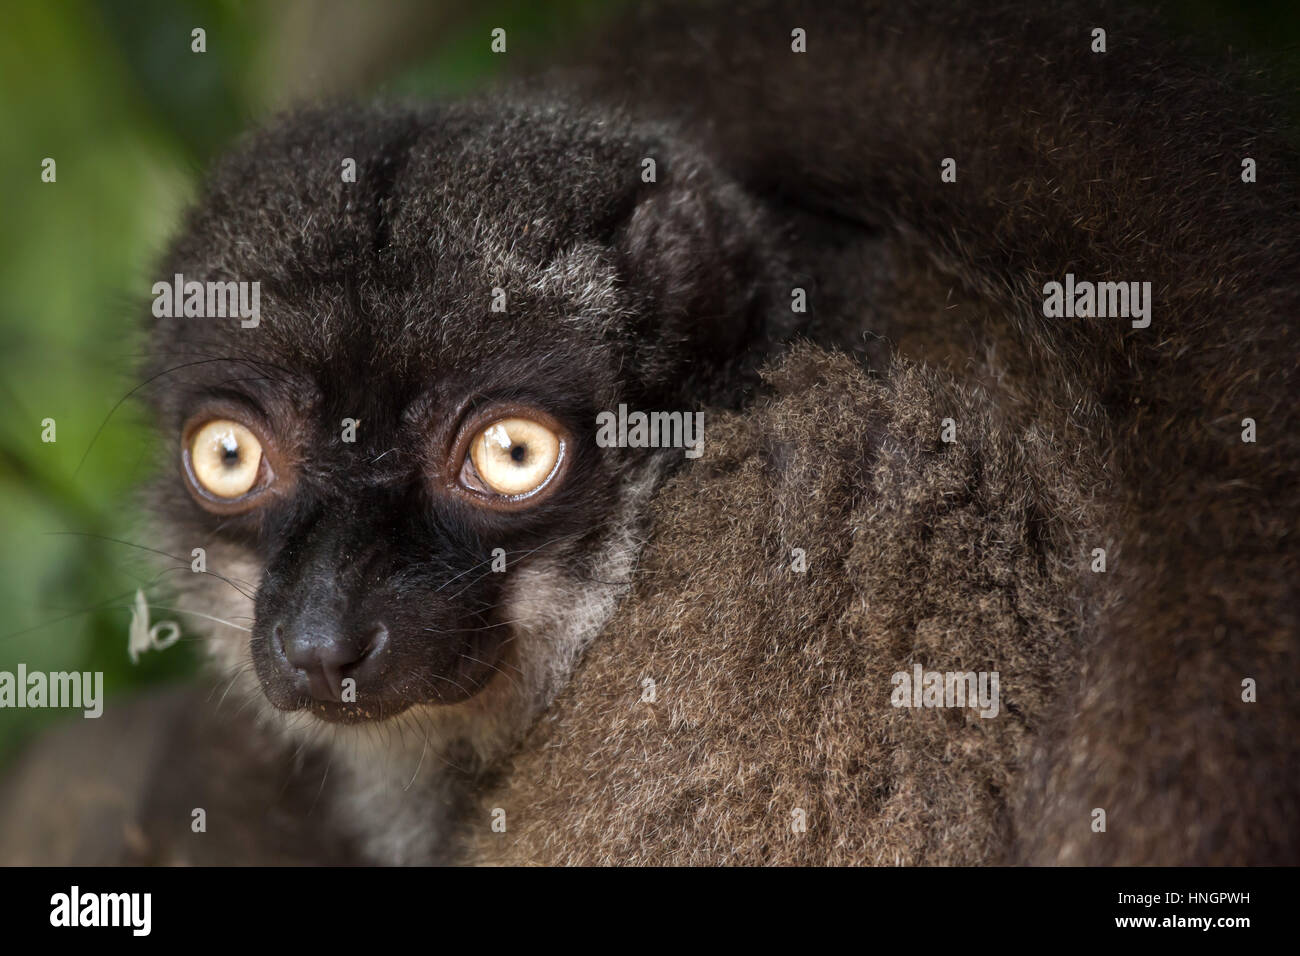 Hembra de cabeza blanca lemur (Eulemur albifrons), también conocido como el lemur marrón de fachada blanca. Foto de stock